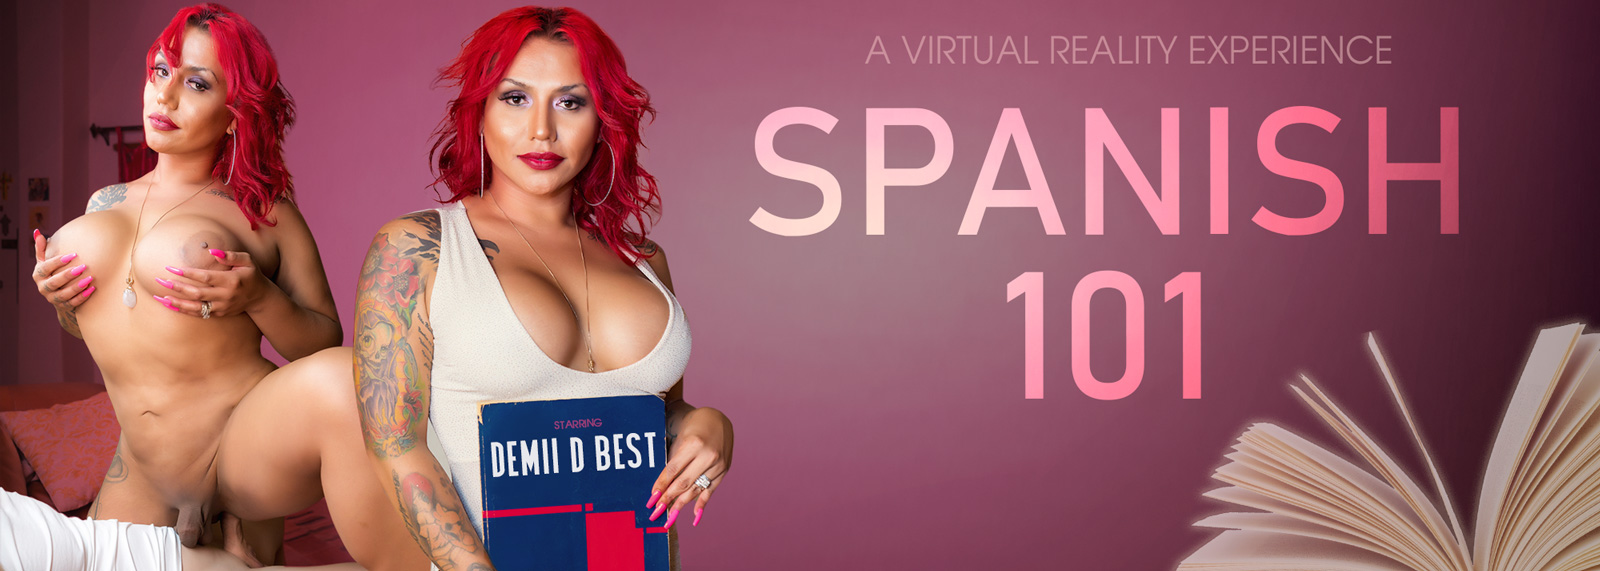 Spanish 101 - VR Porn Video, Starring Demii D Best VR